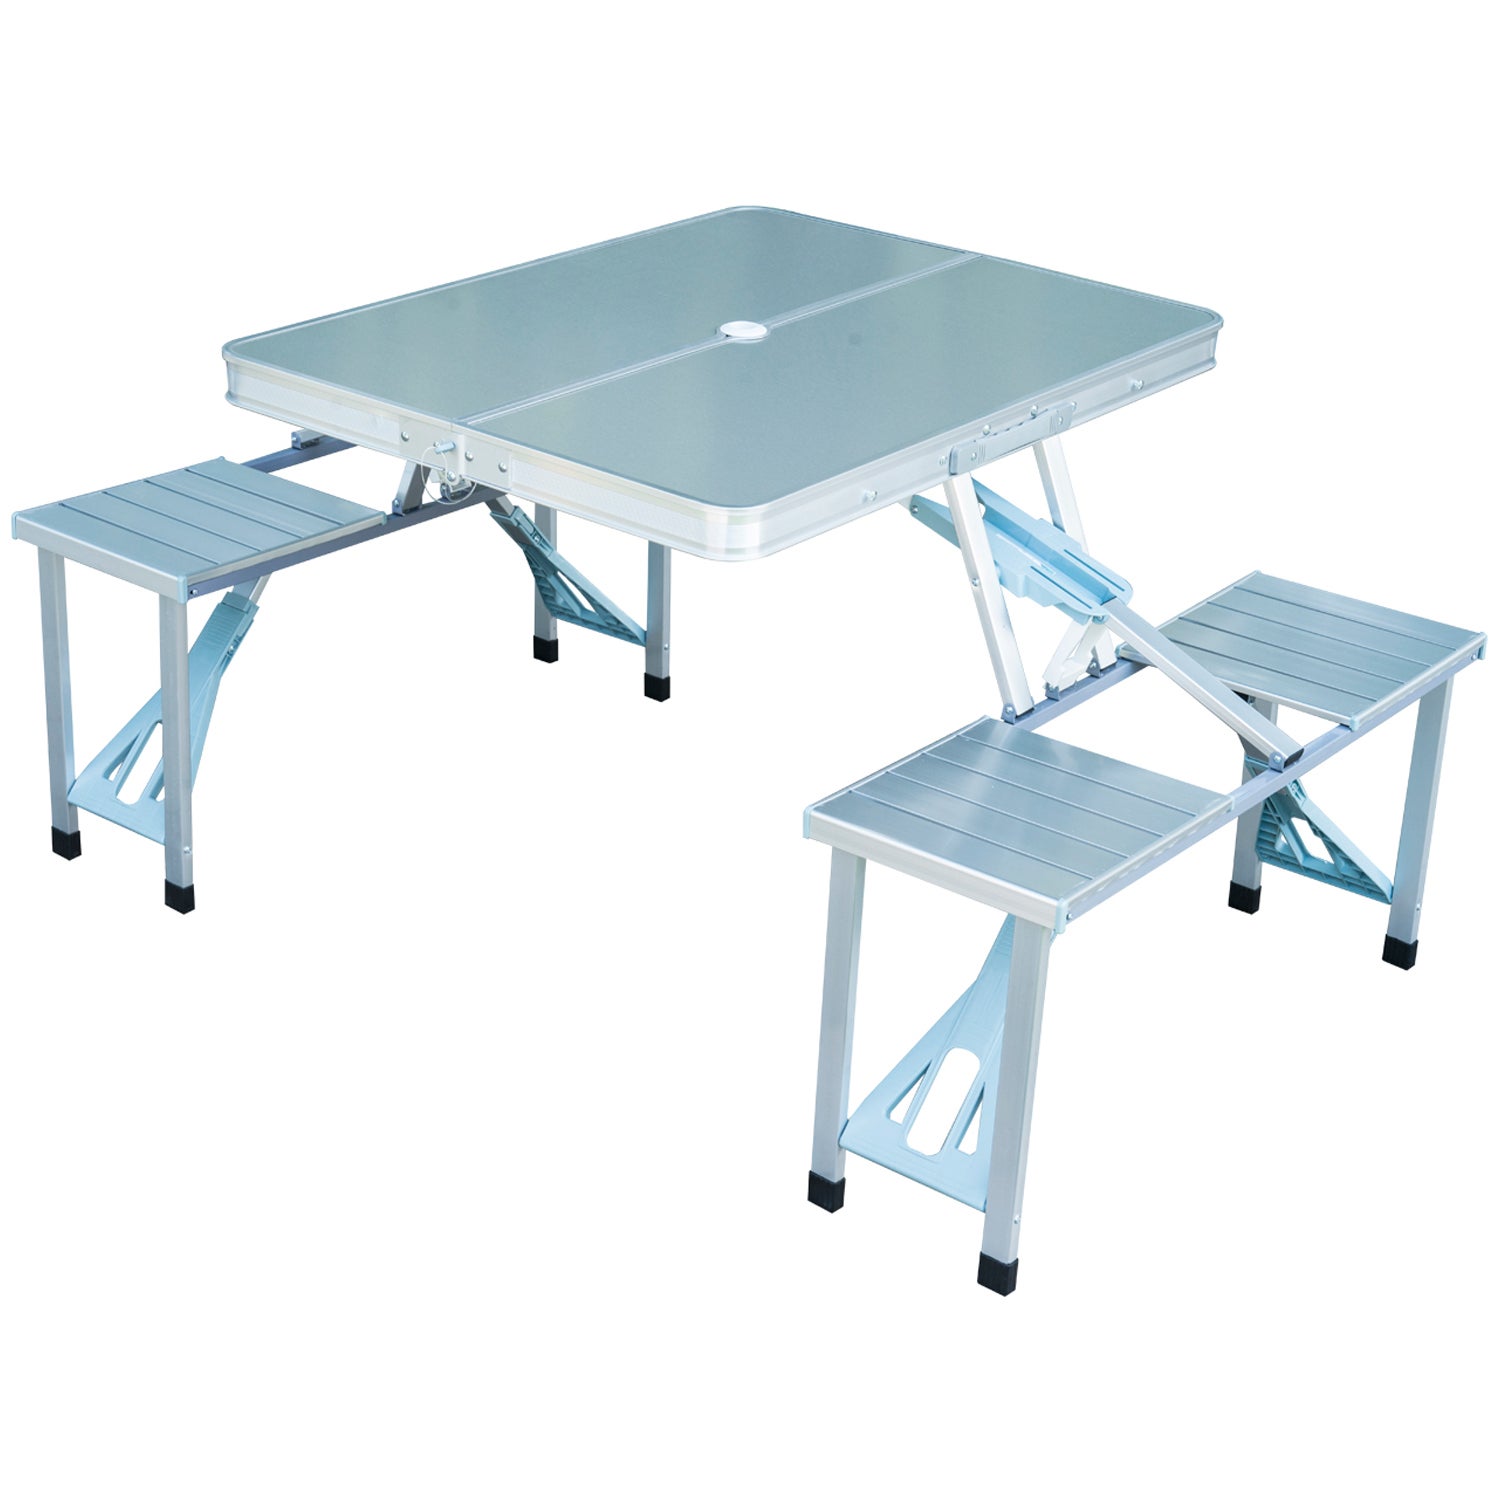 TRIWONDER Table de Camping Pliante Table Pliable en Aluminium Ultralégère Portable Pratique pour Camping Pique-Nique Barbecue Pêche